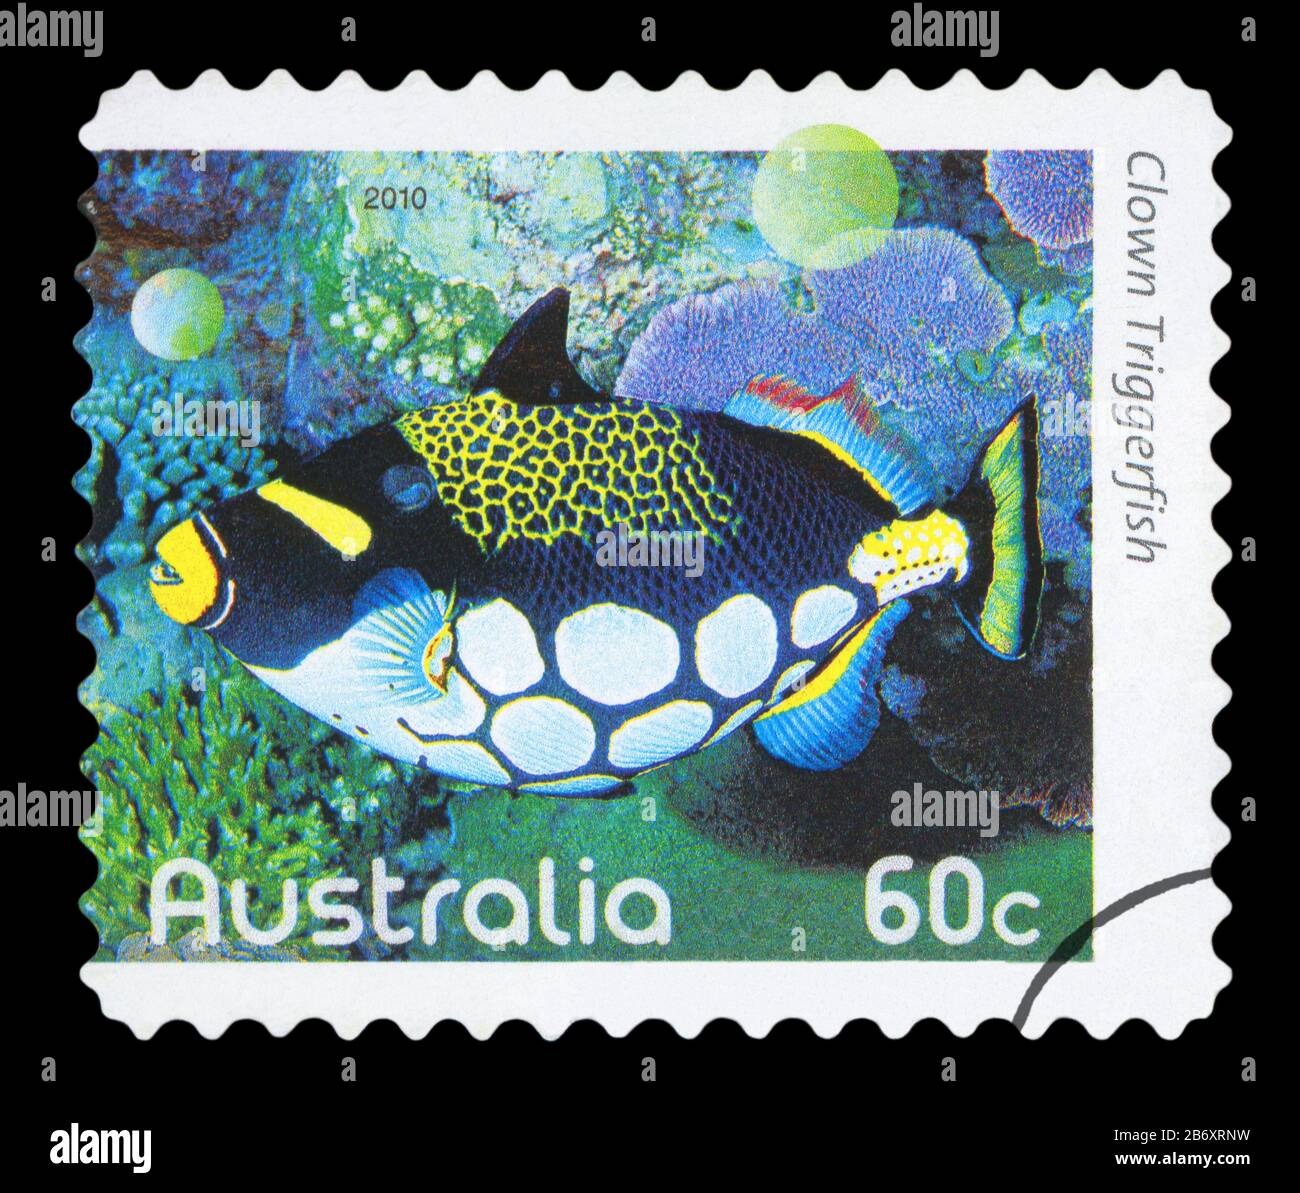 AUSTRALIA - circa 2010: utilizzate un francobollo da Australia, raffigurante un'immagine di un pagliaccio pesci balestra, circa 2010. Foto Stock